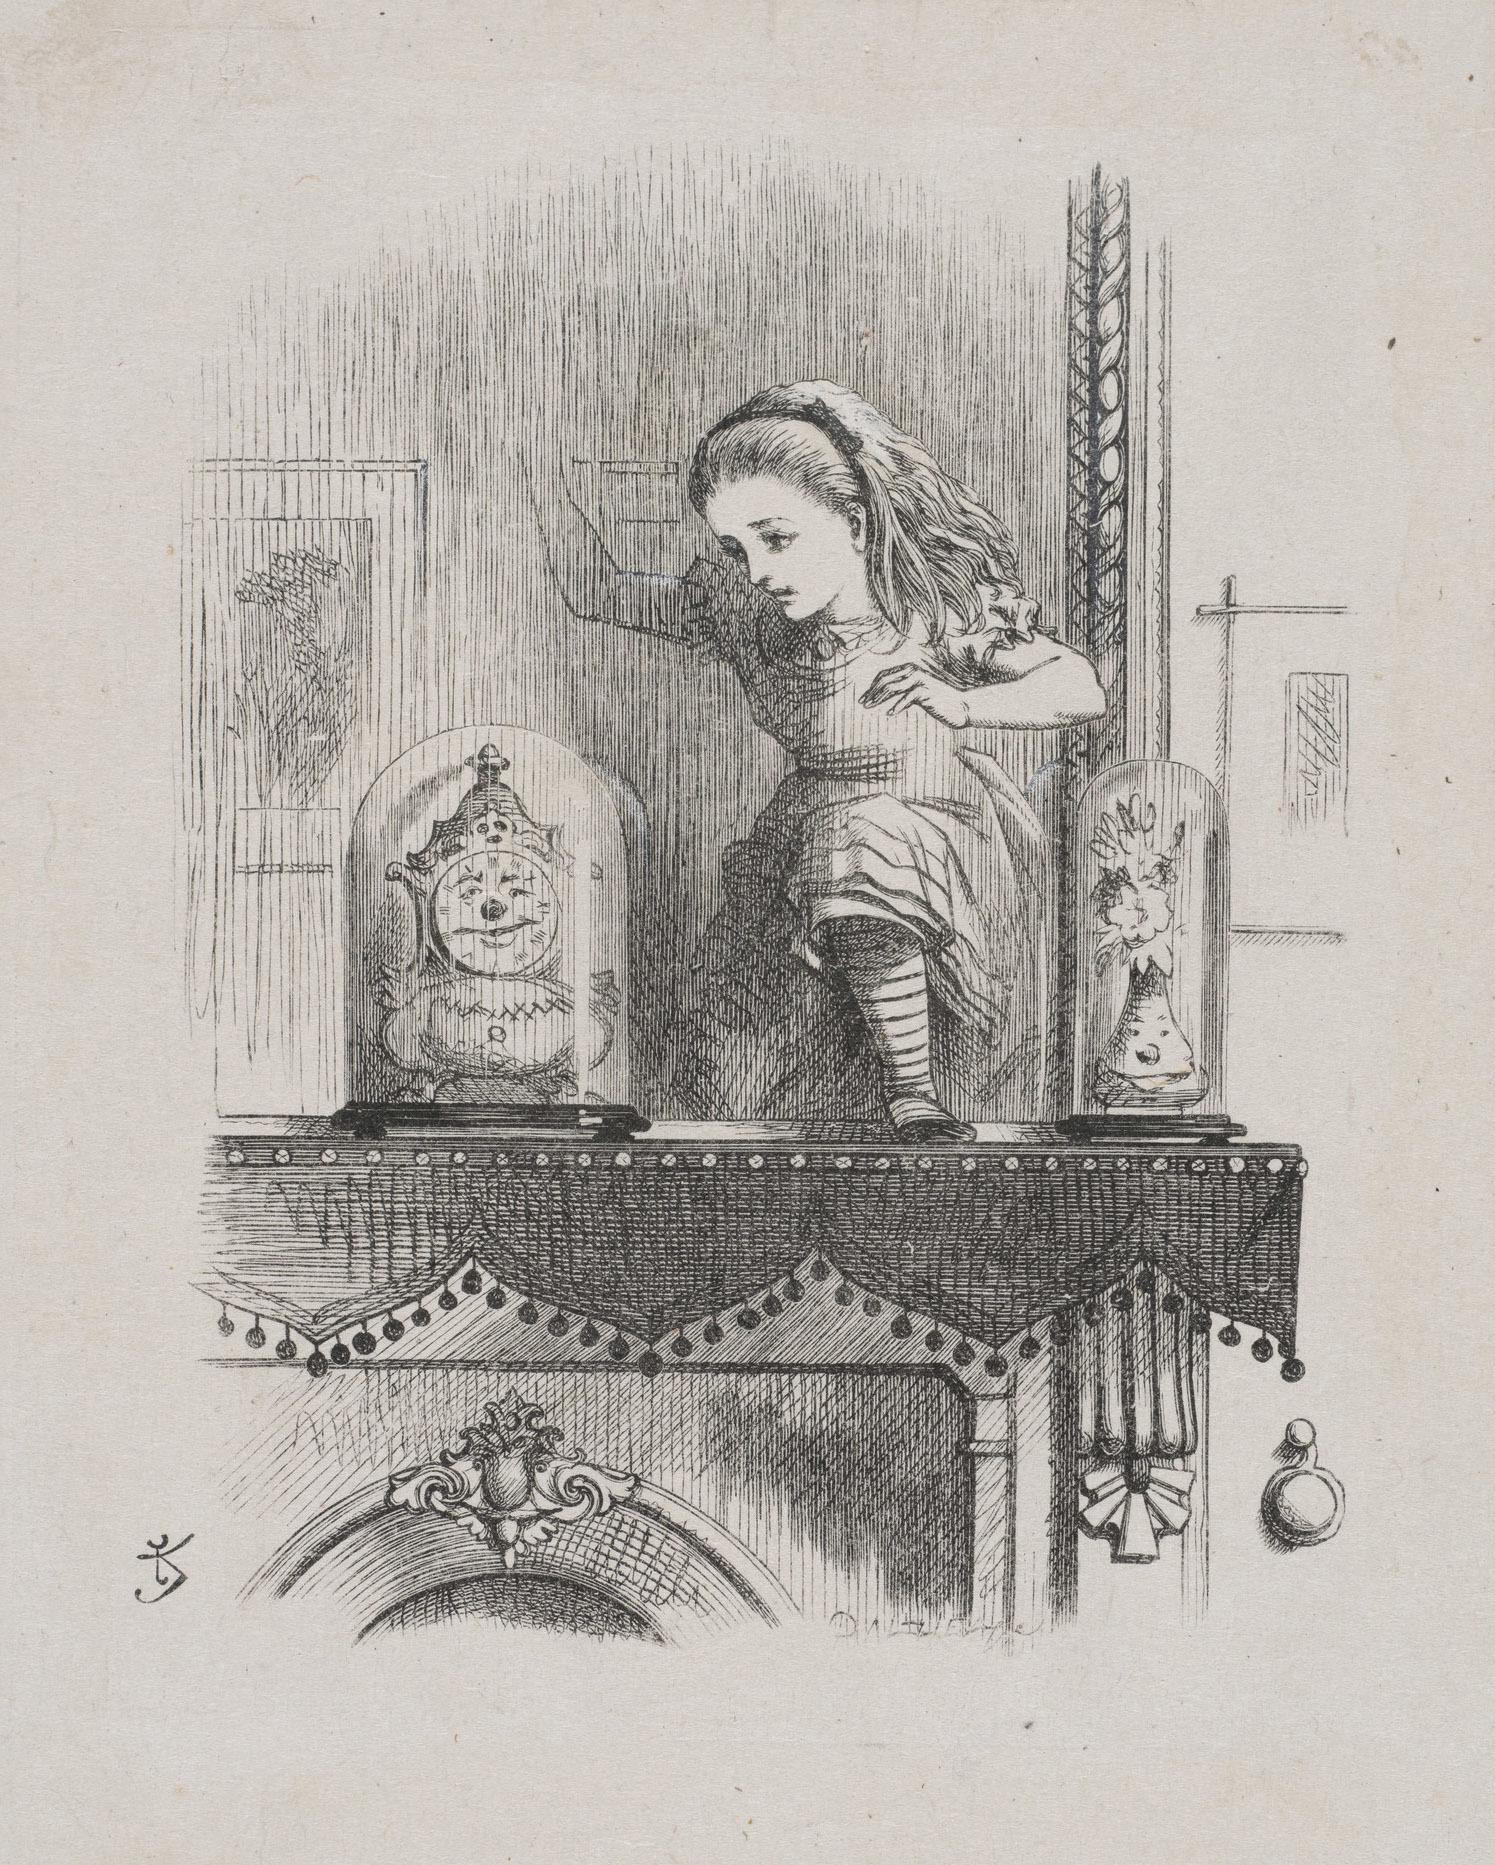 融け始めた鏡を通り抜けるアリス、『鏡の国のアリス』より、ジョン・テニエル画、ダルジール兄弟彫版、木版画、1871年、